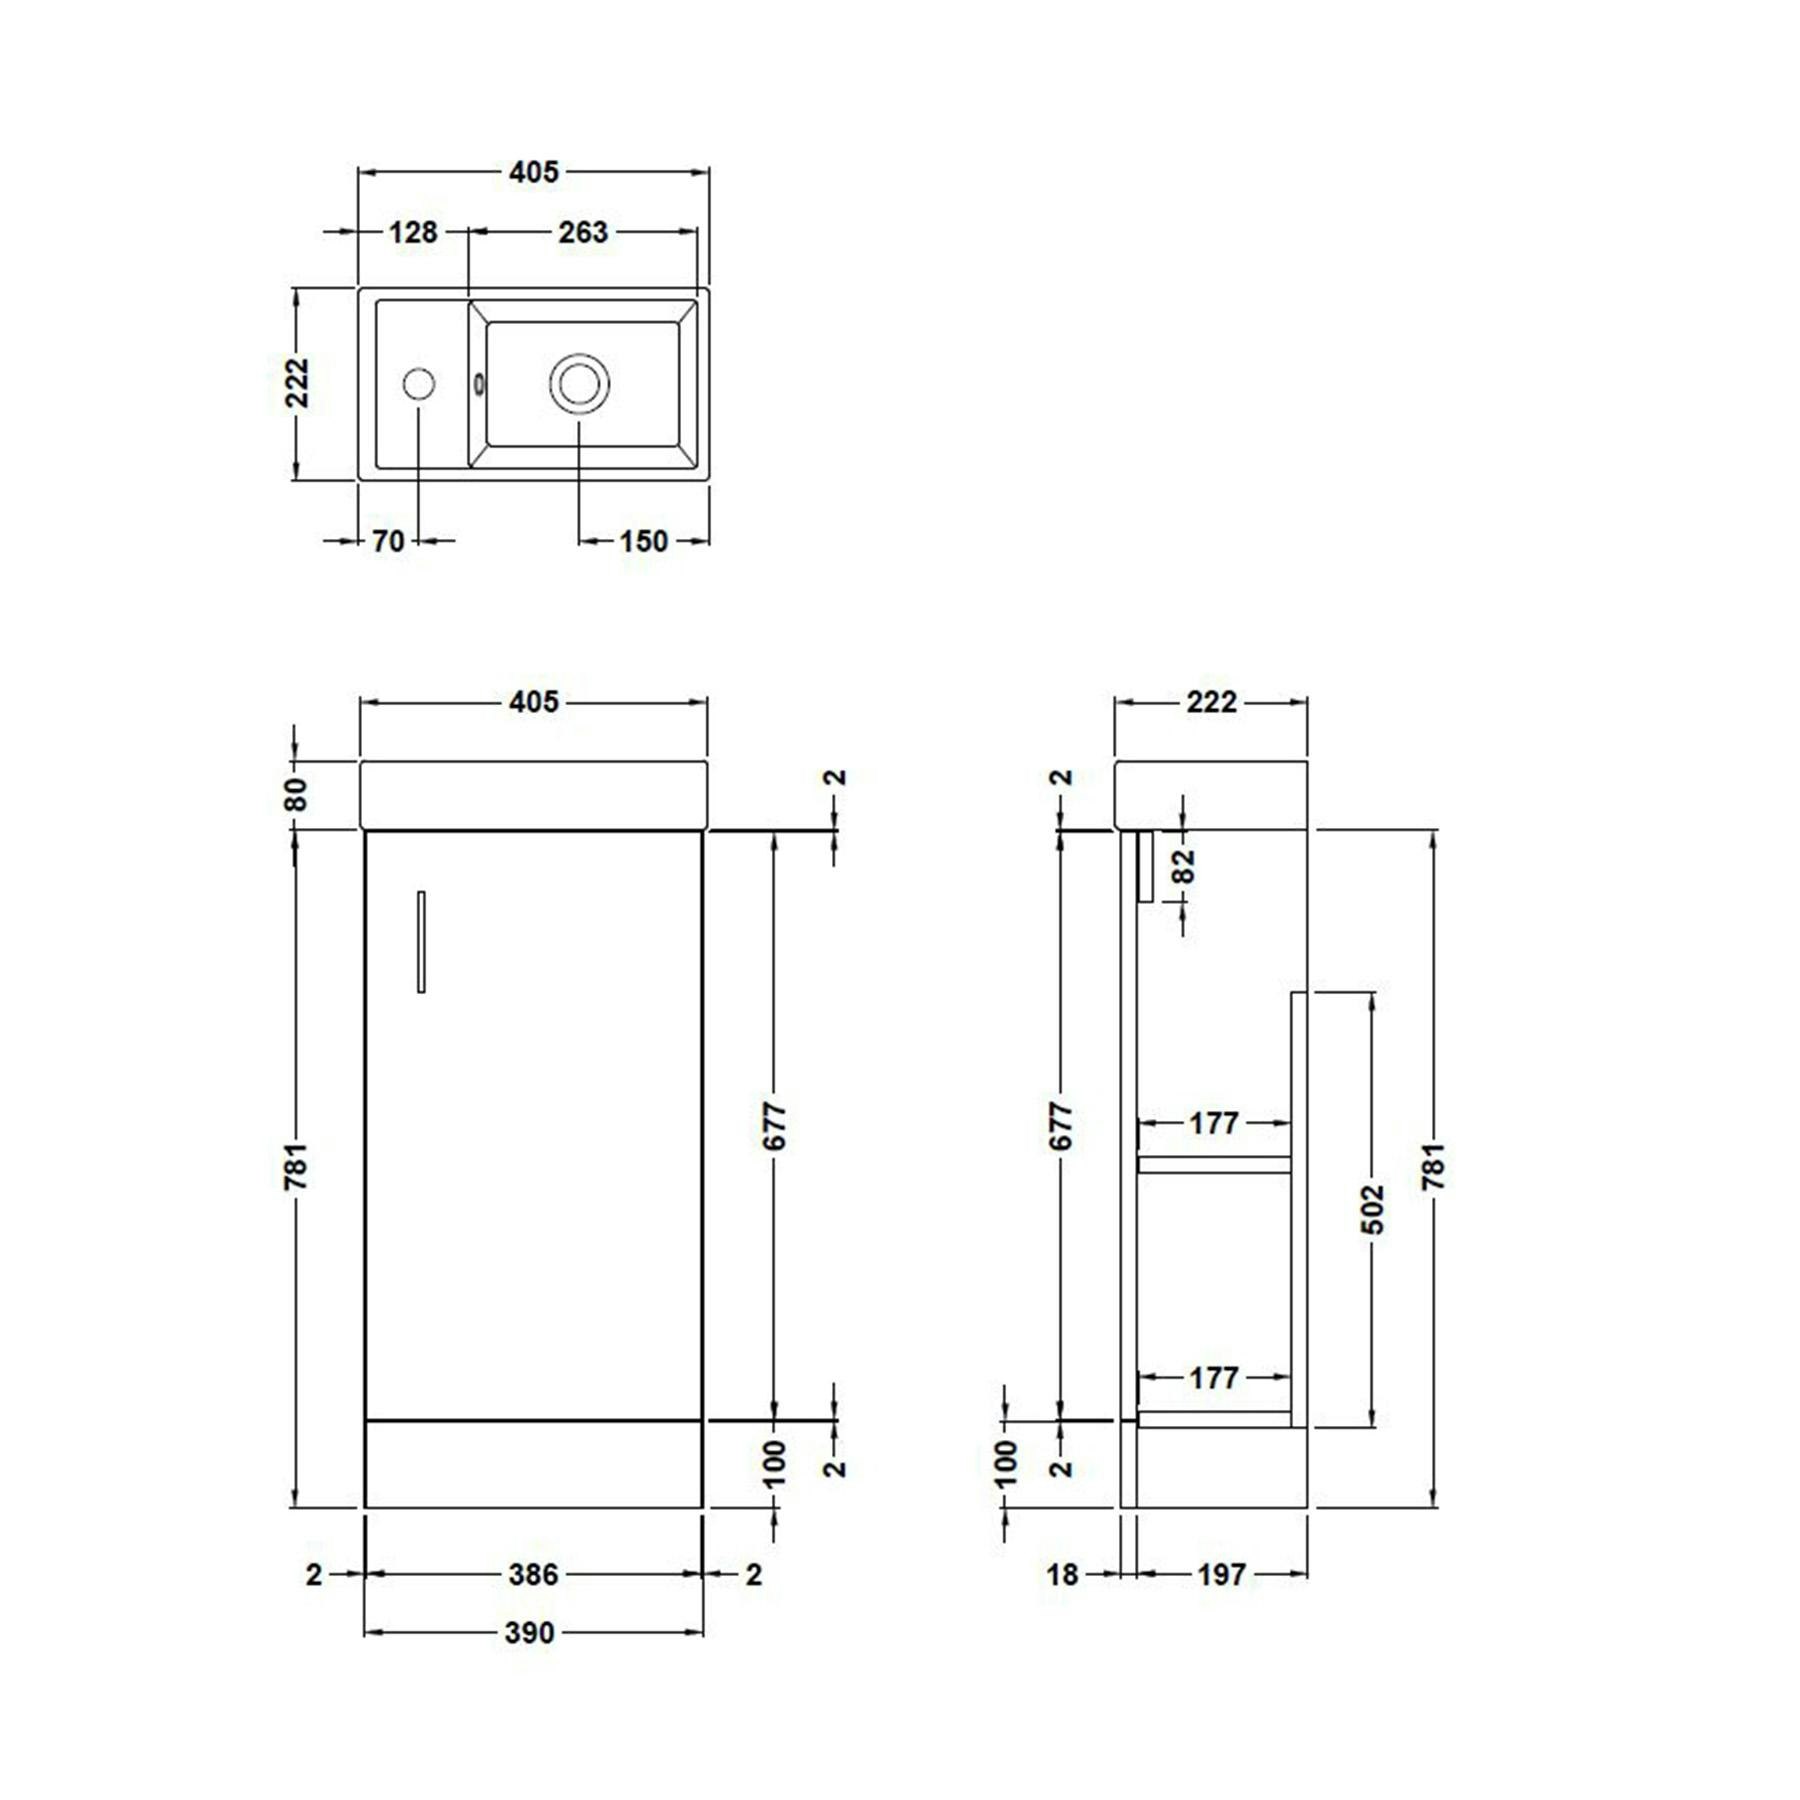 Como 400mm Floor Standing Vanity Unit Indigo Grey Gloss - 1 Door Basin Unit